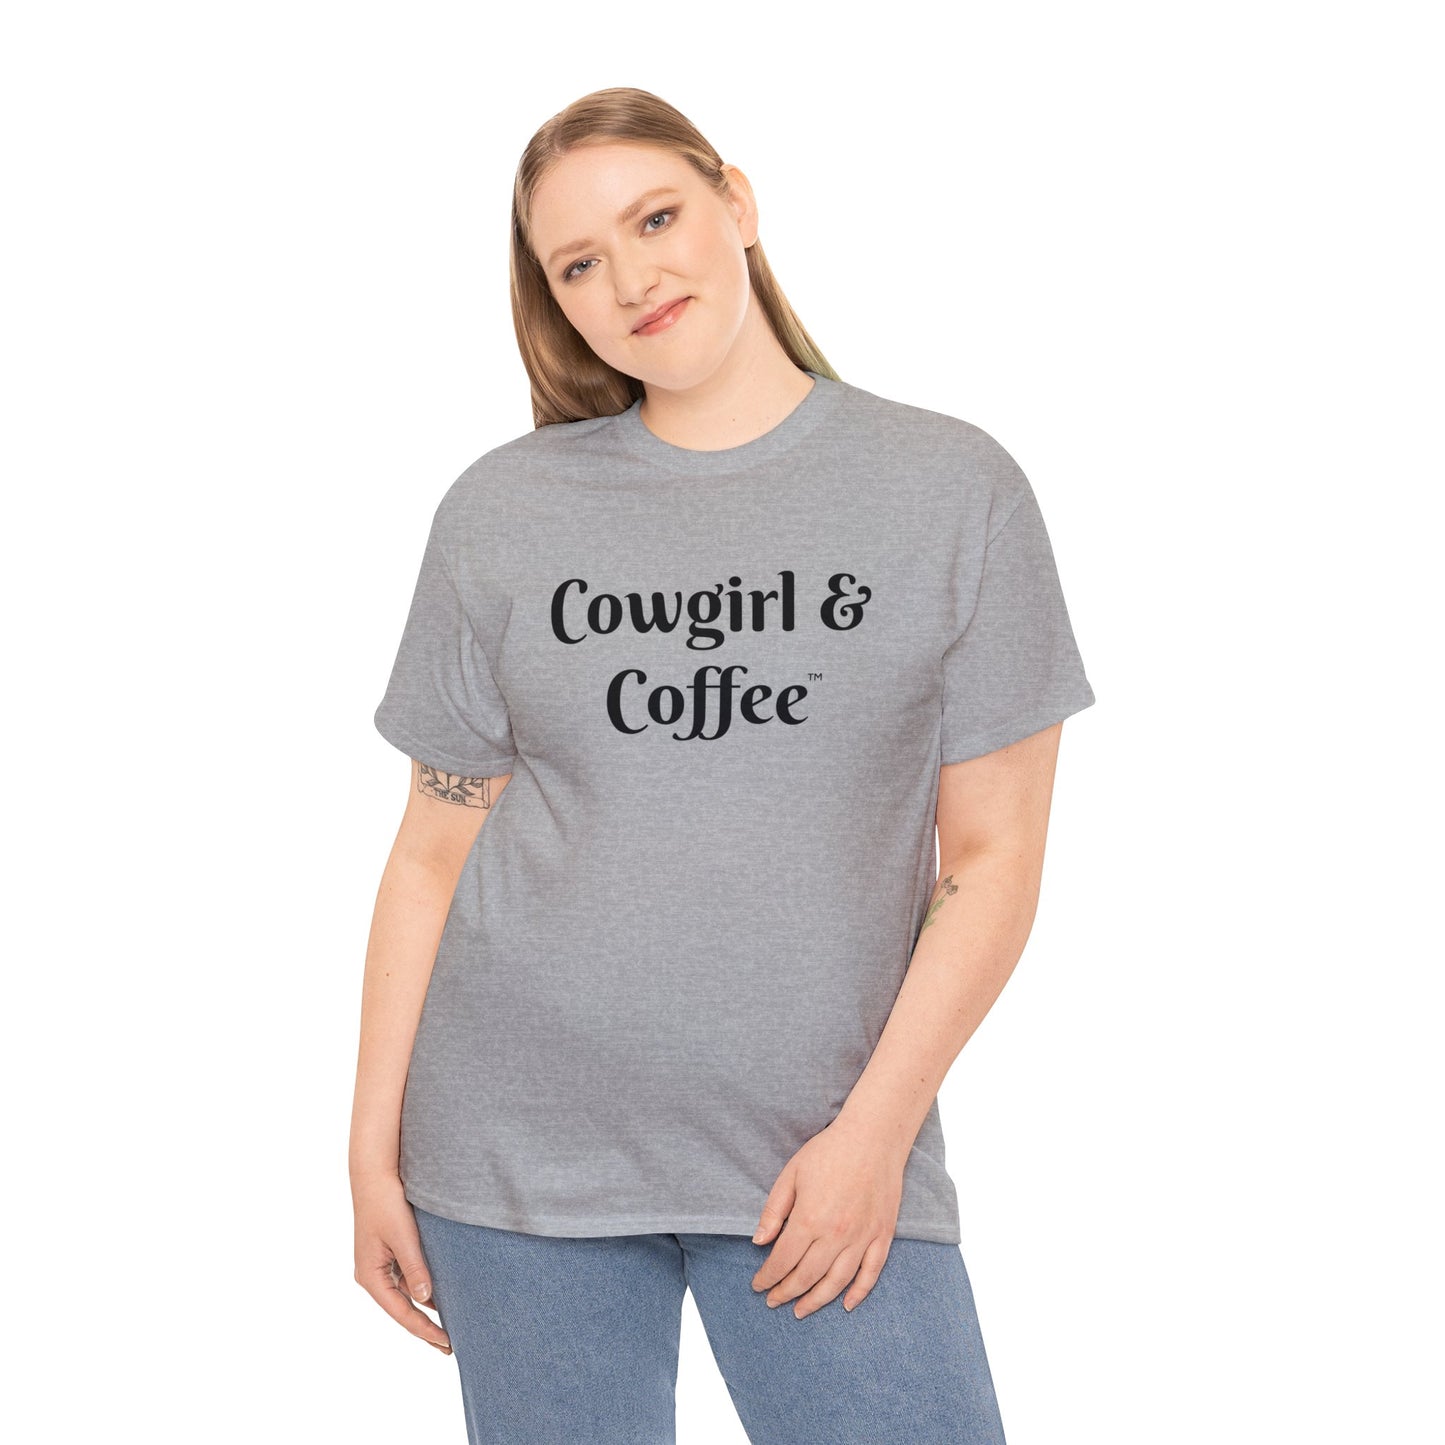 Bargain Tee "Cowgirl & Coffee"